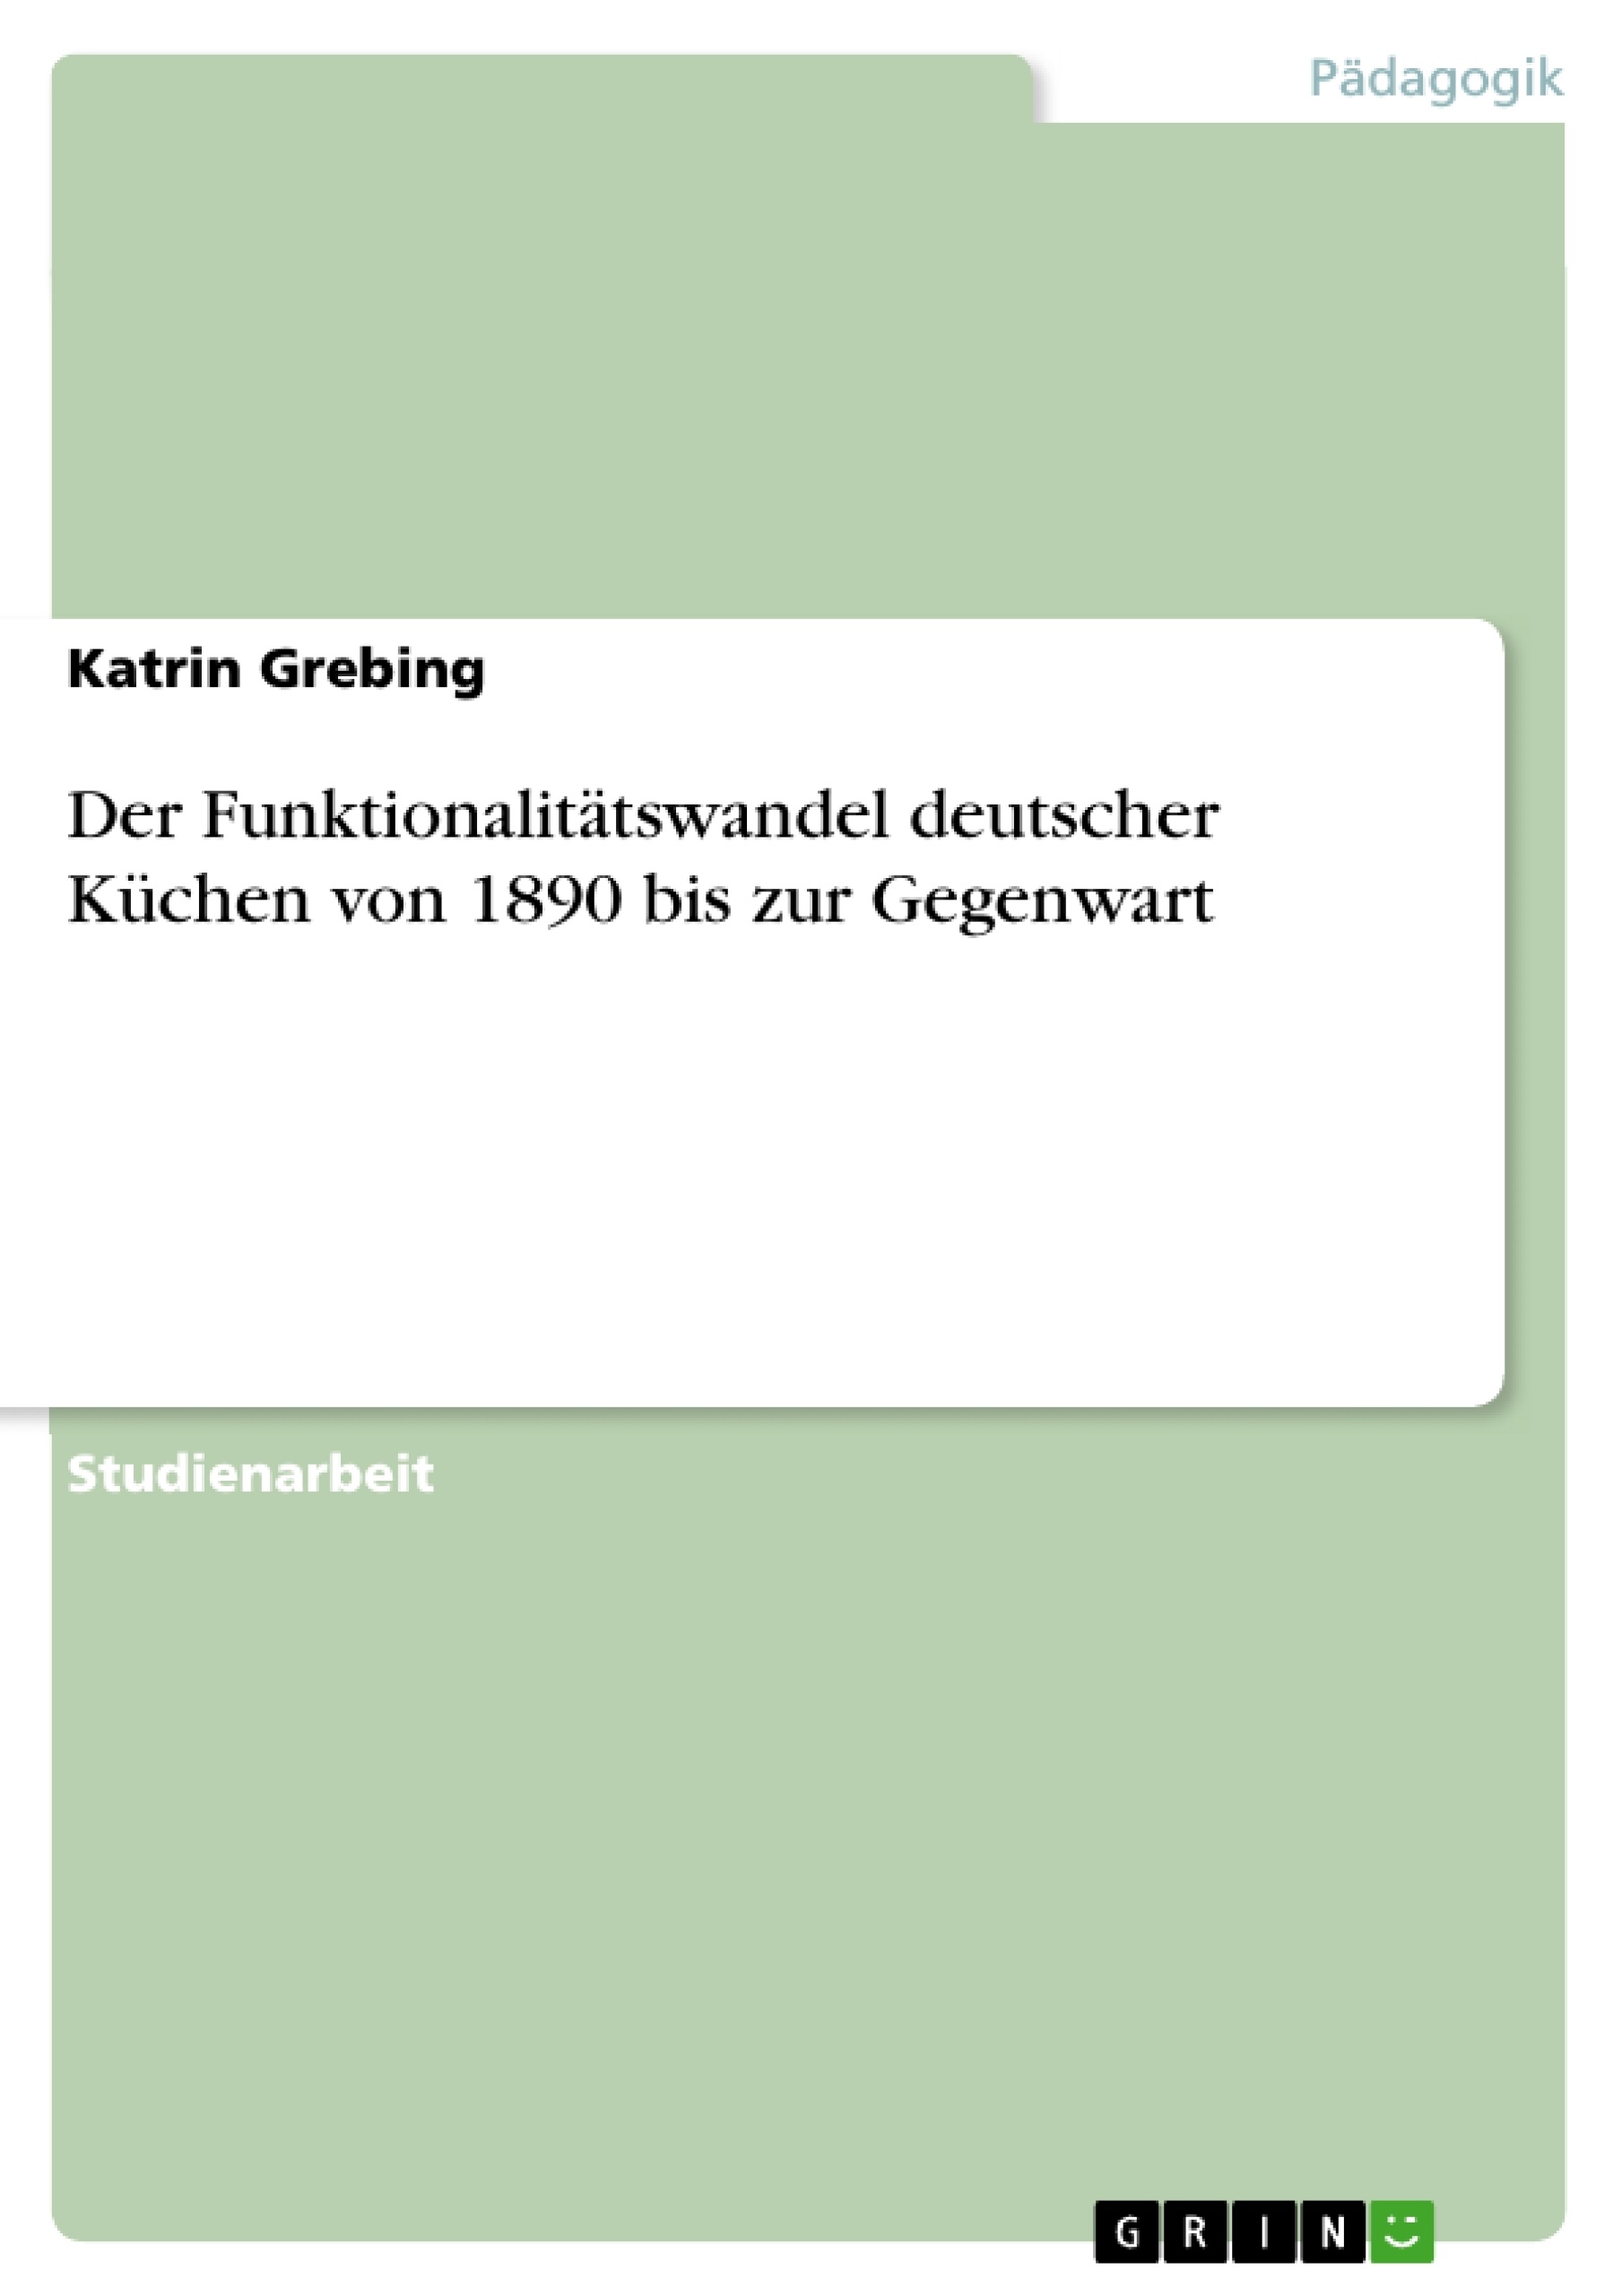 Title: Der Funktionalitätswandel deutscher Küchen von 1890 bis zur Gegenwart